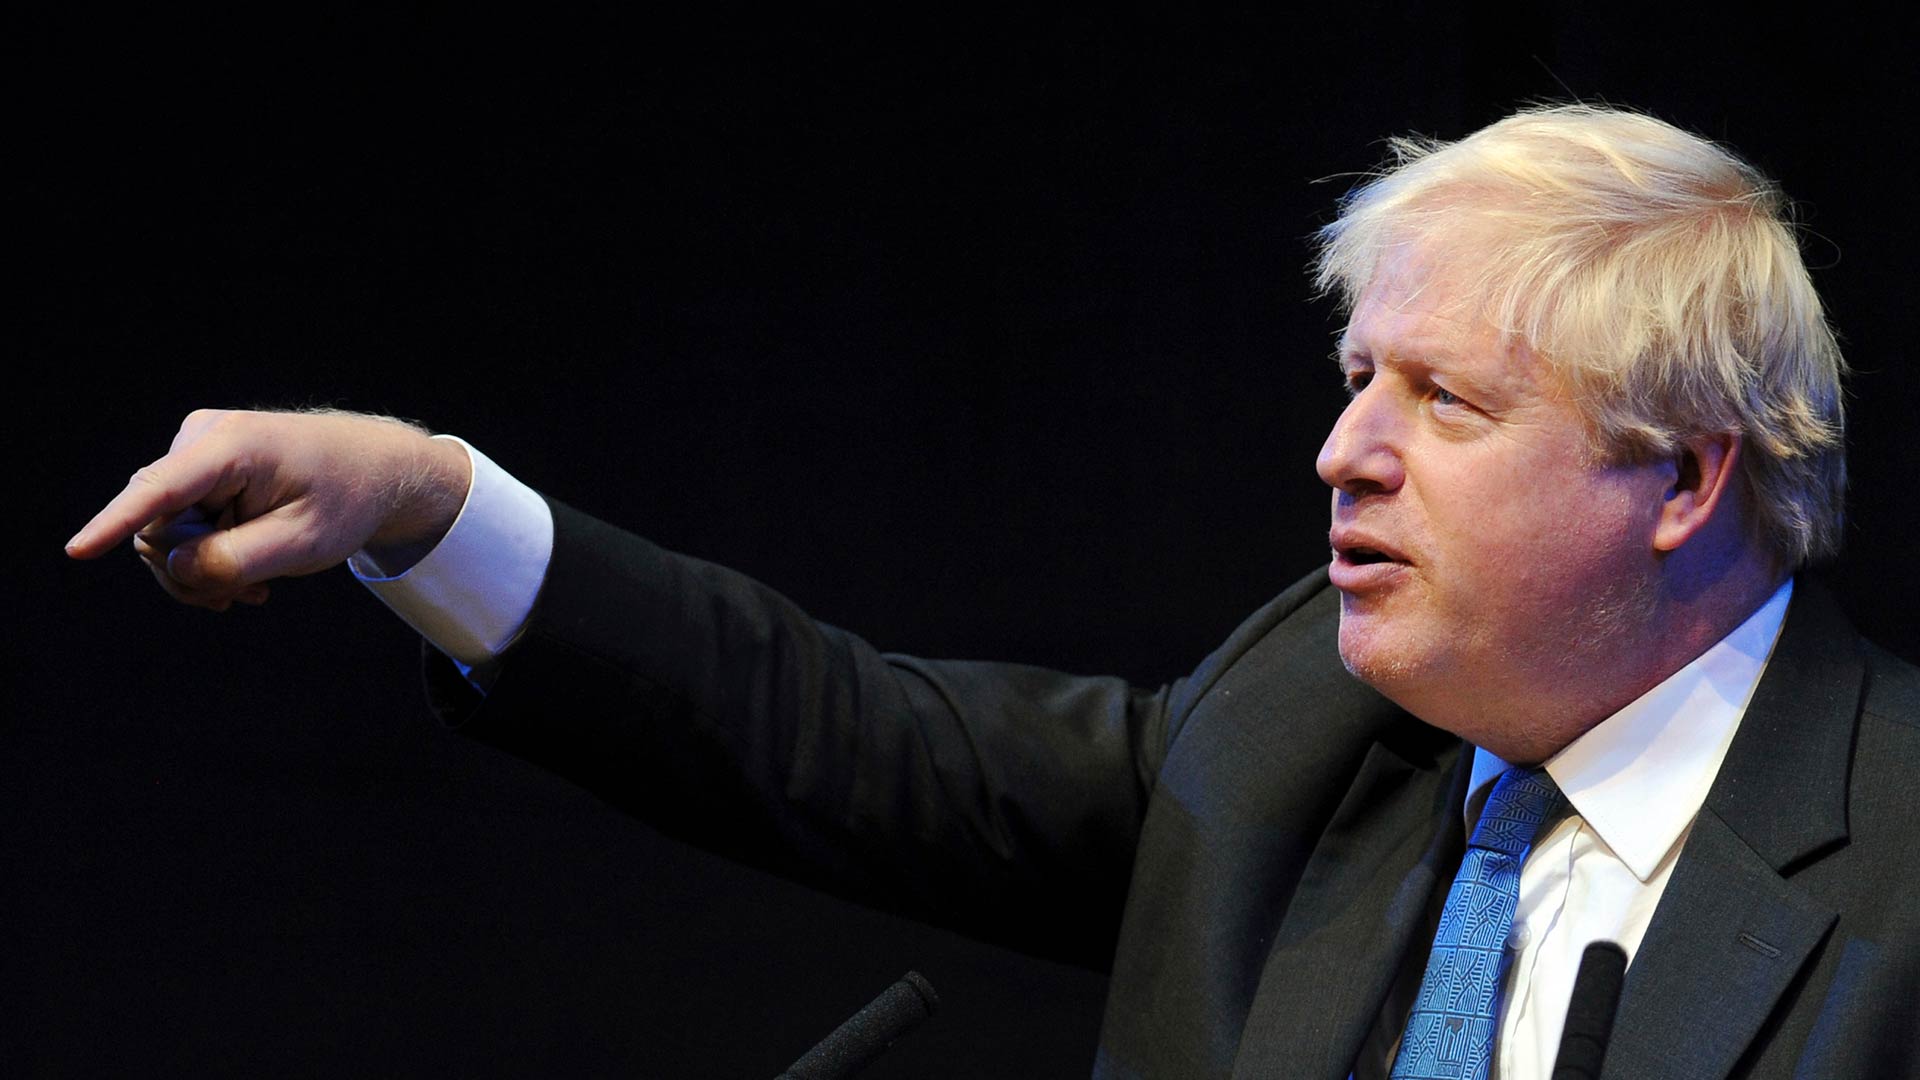 Boris Johnson comparecerá ante un tribunal por “mentir” en la campaña del Brexit